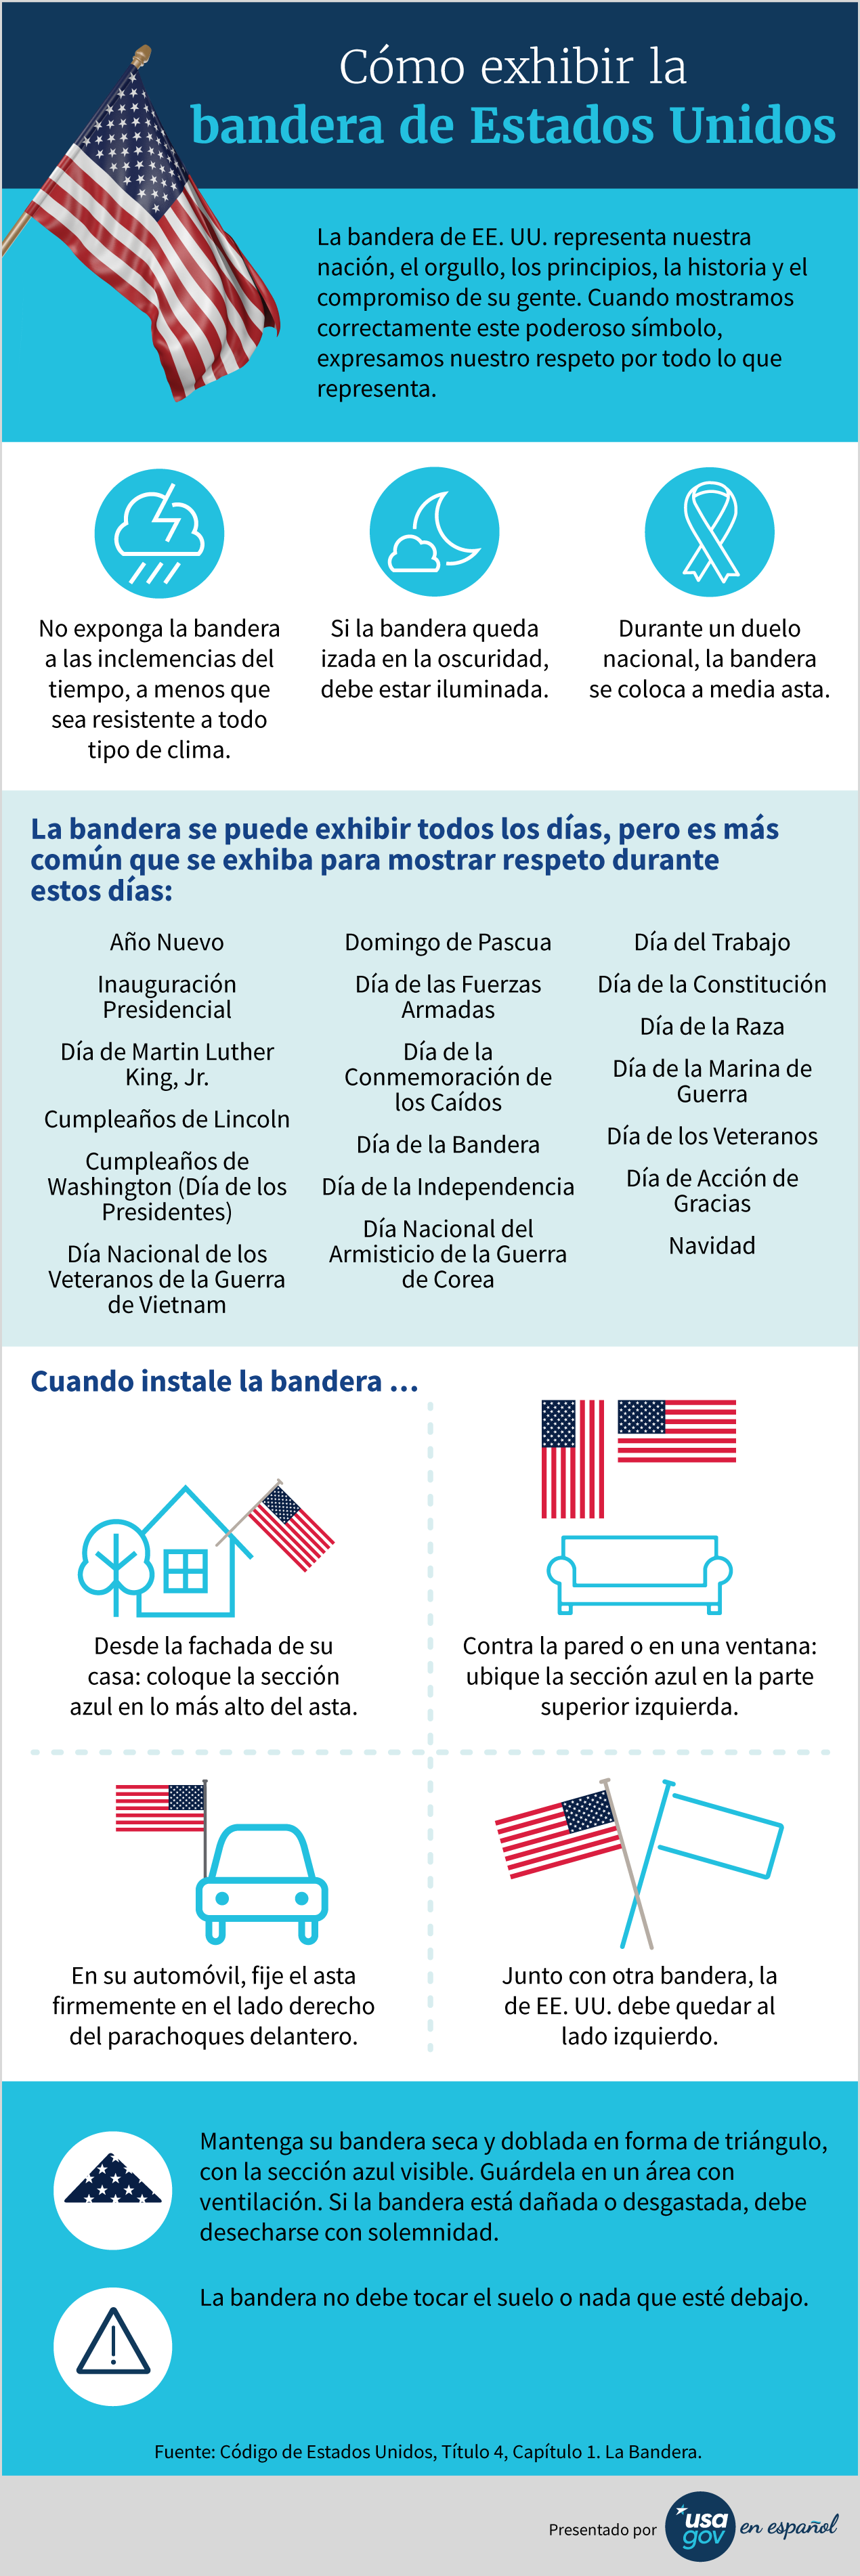 Infografía sobre cómo y cuándo mostrar la bandera de EE. UU. Ver el texto de la infografía abajo.